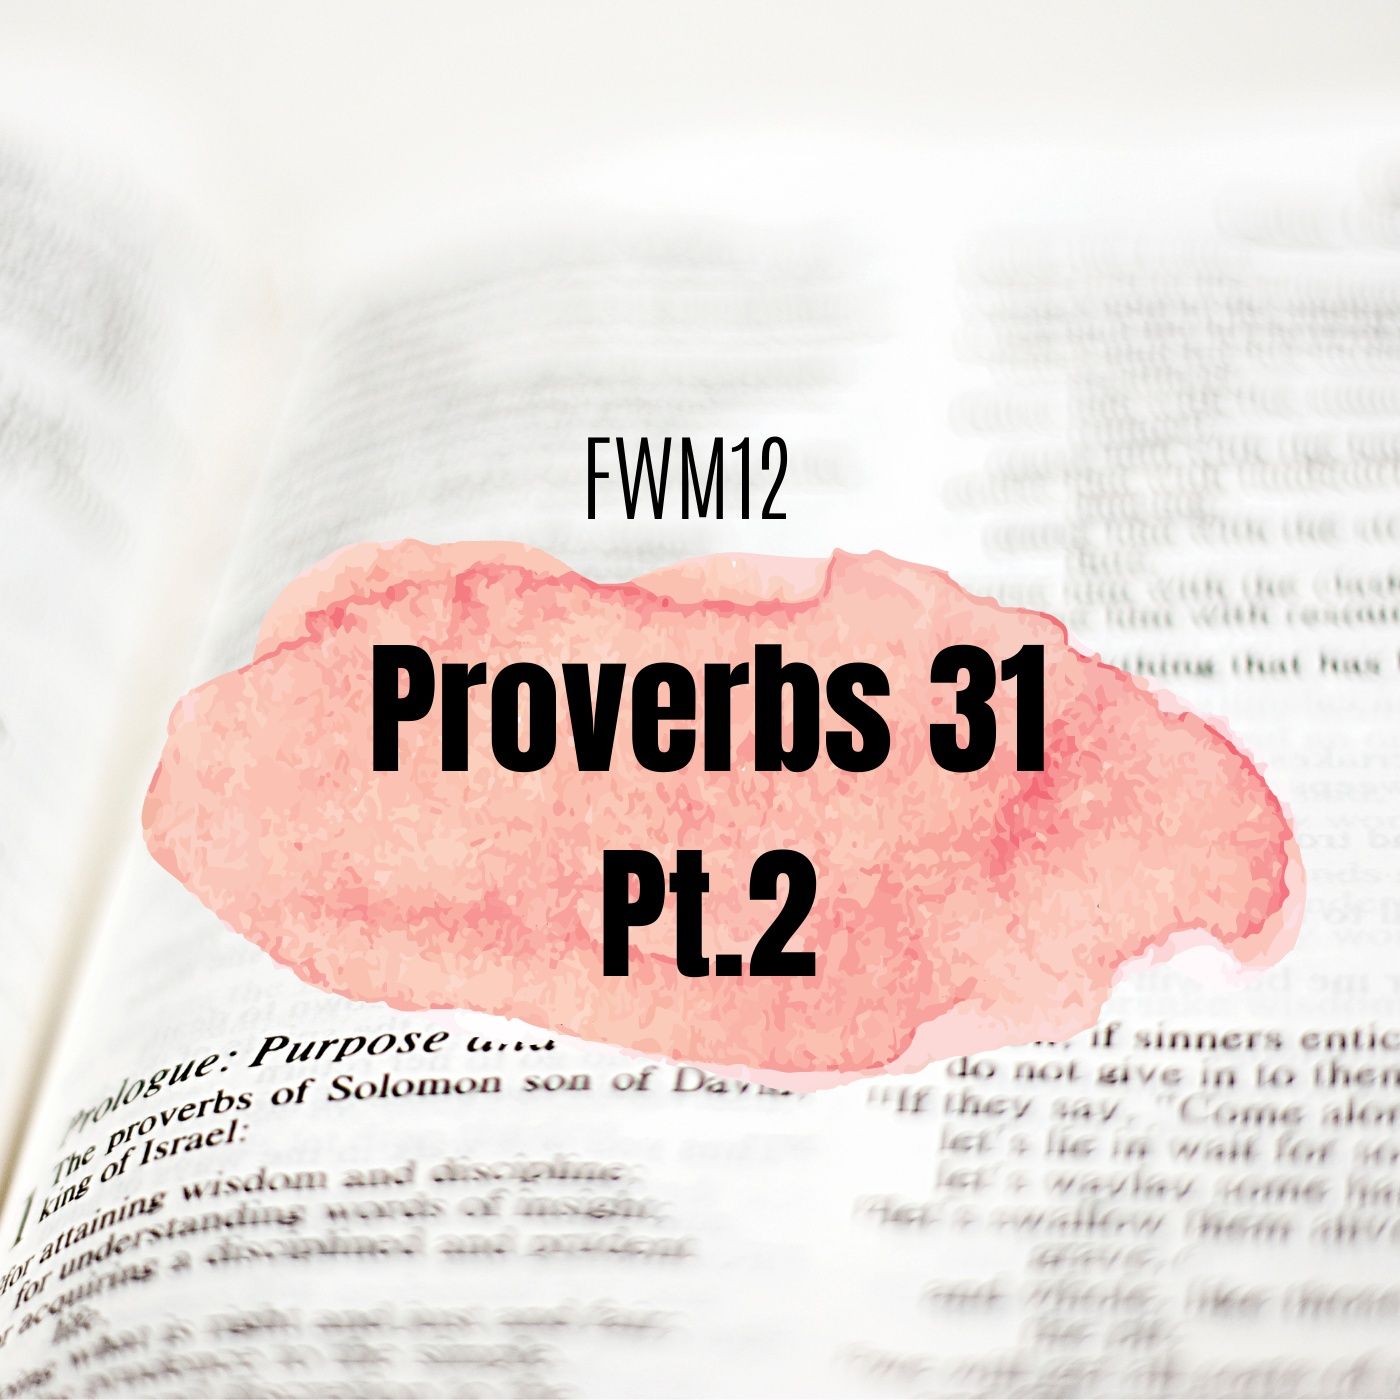 FWM12 Proverbs 31 Pt.2